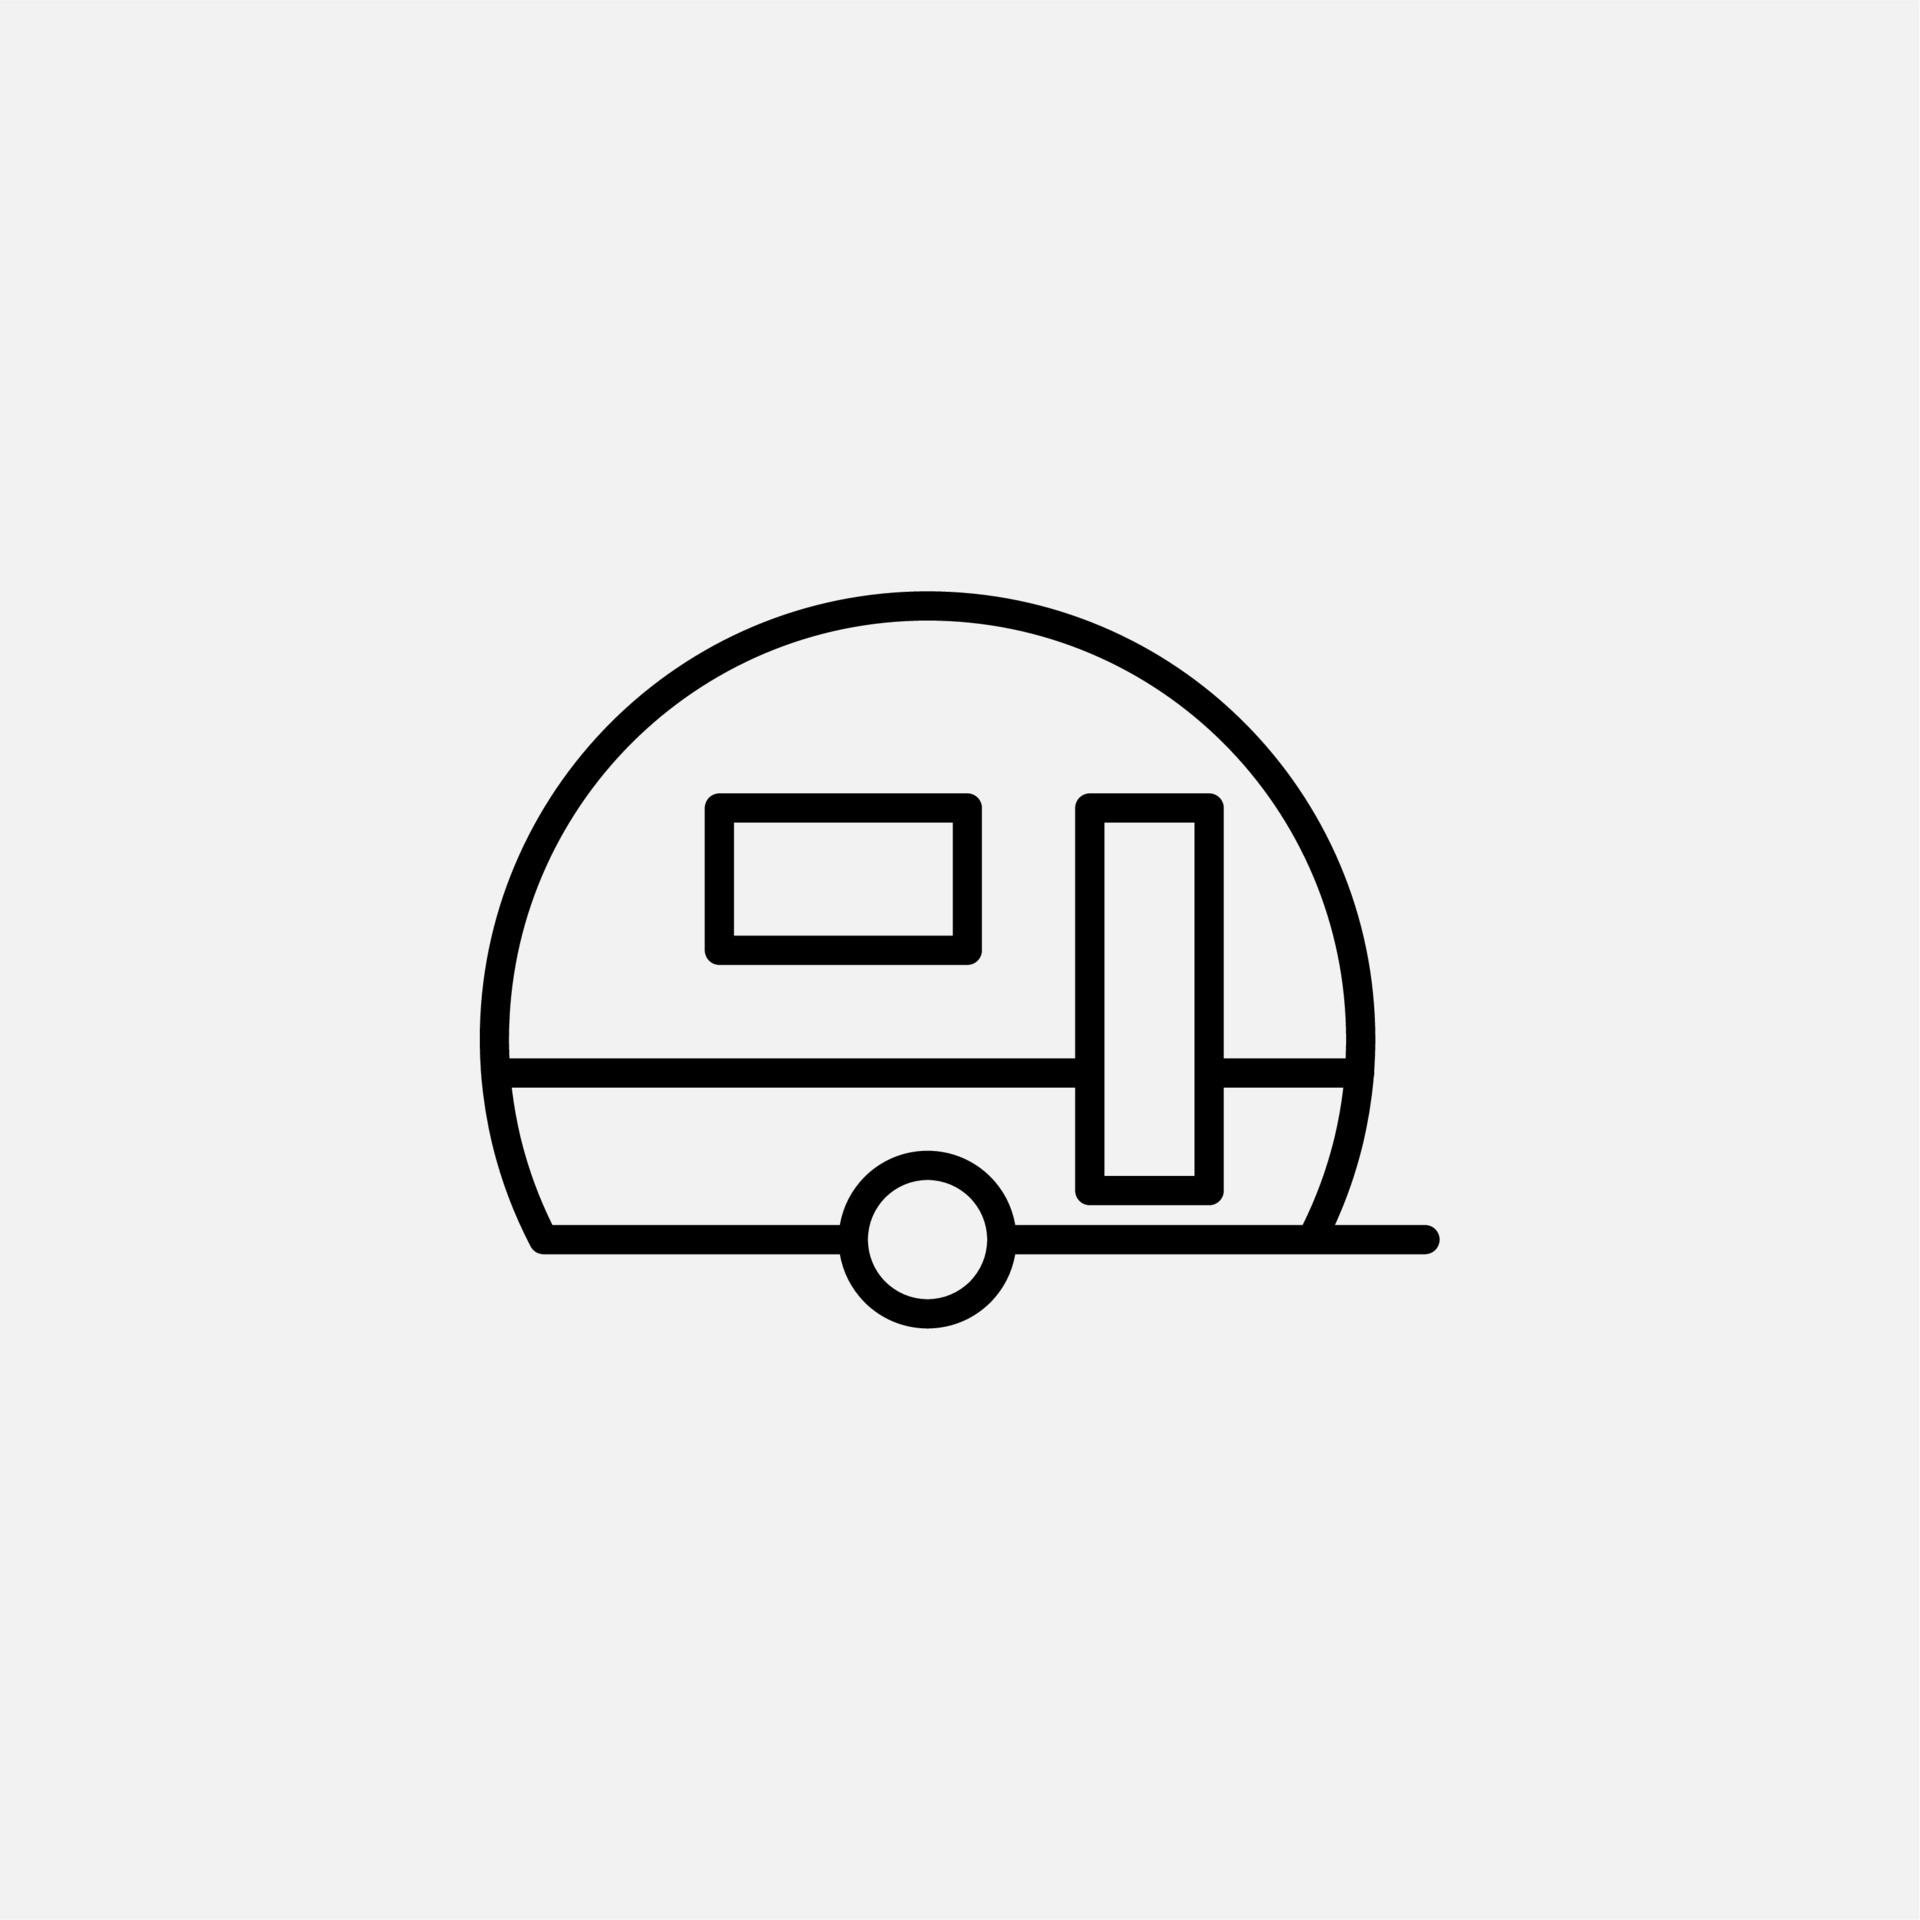 https://static.vecteezy.com/ti/gratis-vektor/p3/4852840-wohnwagen-wohnmobil-reiselinie-symbol-illustration-logo-vorlage-geeignet-fur-viele-zwecke-kostenlos-vektor.jpg